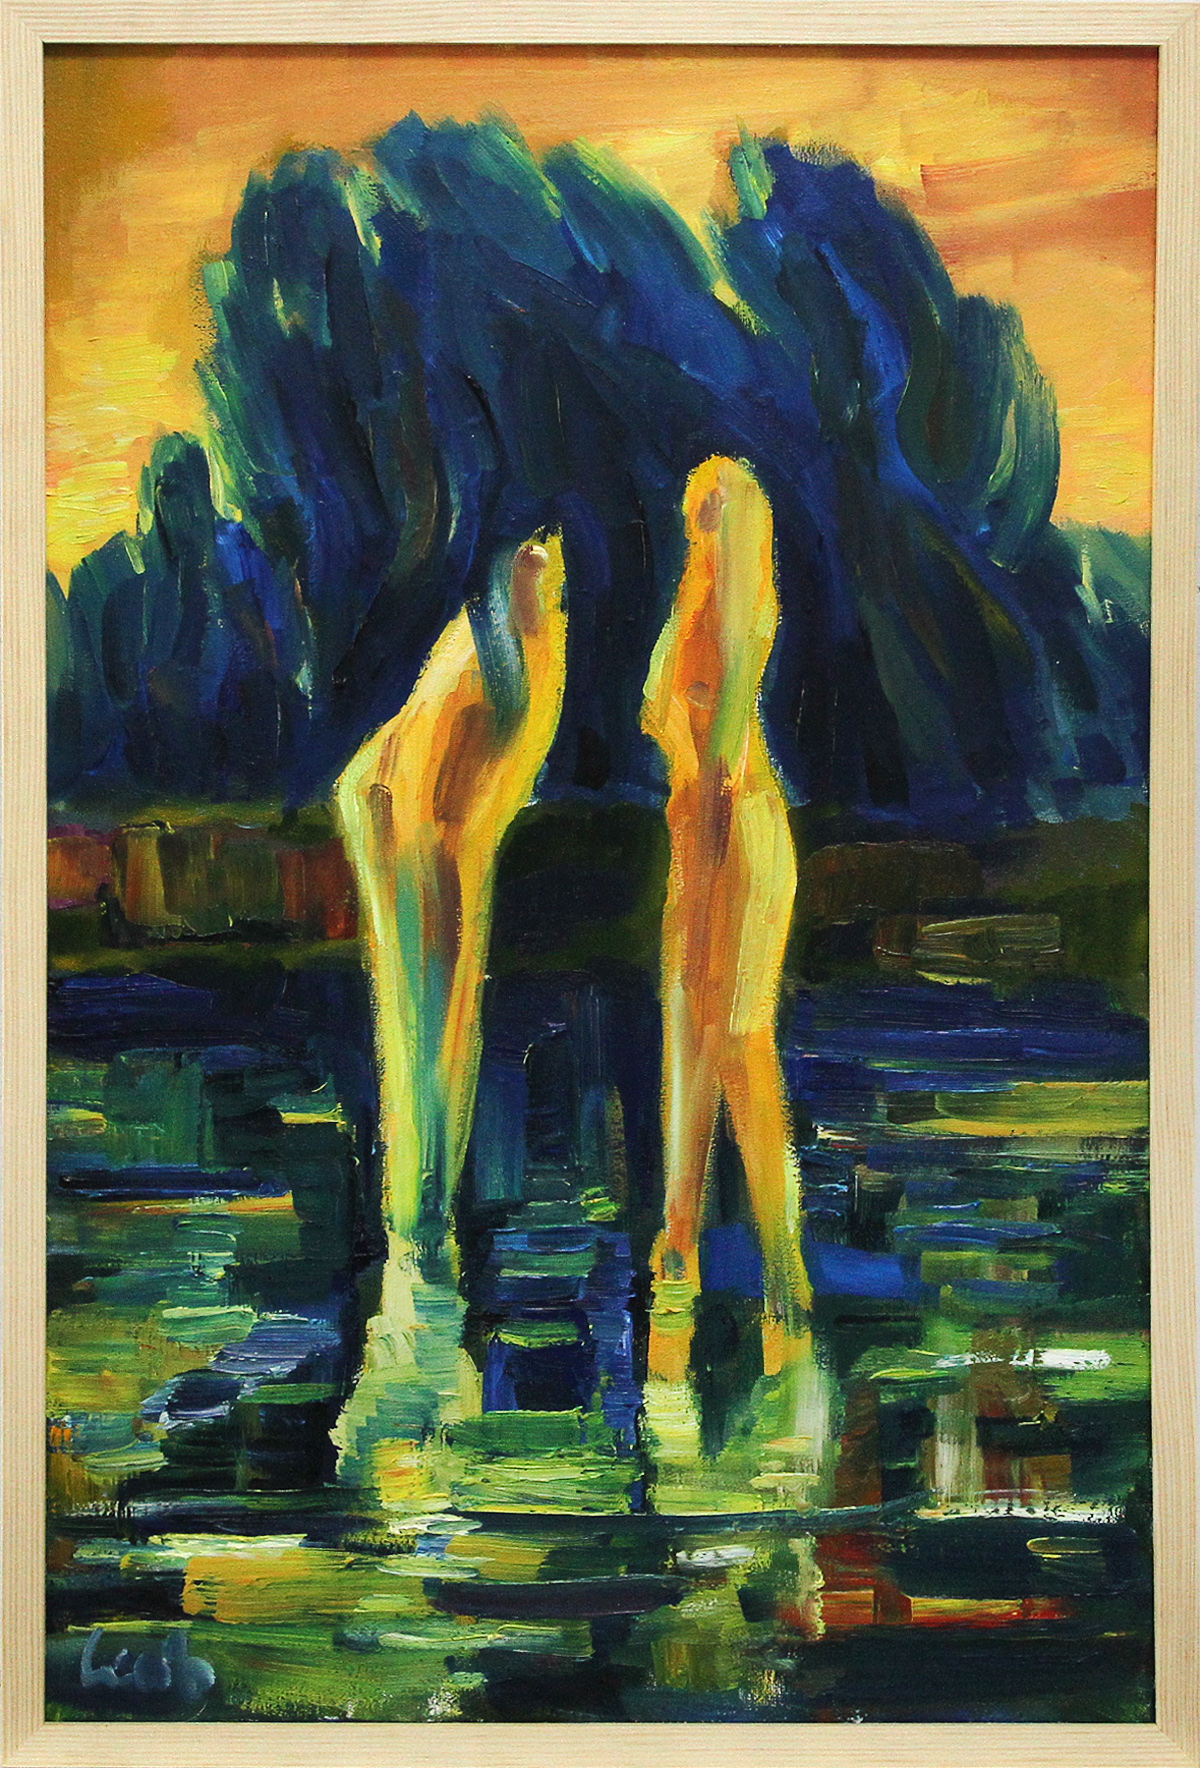 M. Cieśla: "Frauen im See", Original/Unikat, Expressionistisches Ölgemälde